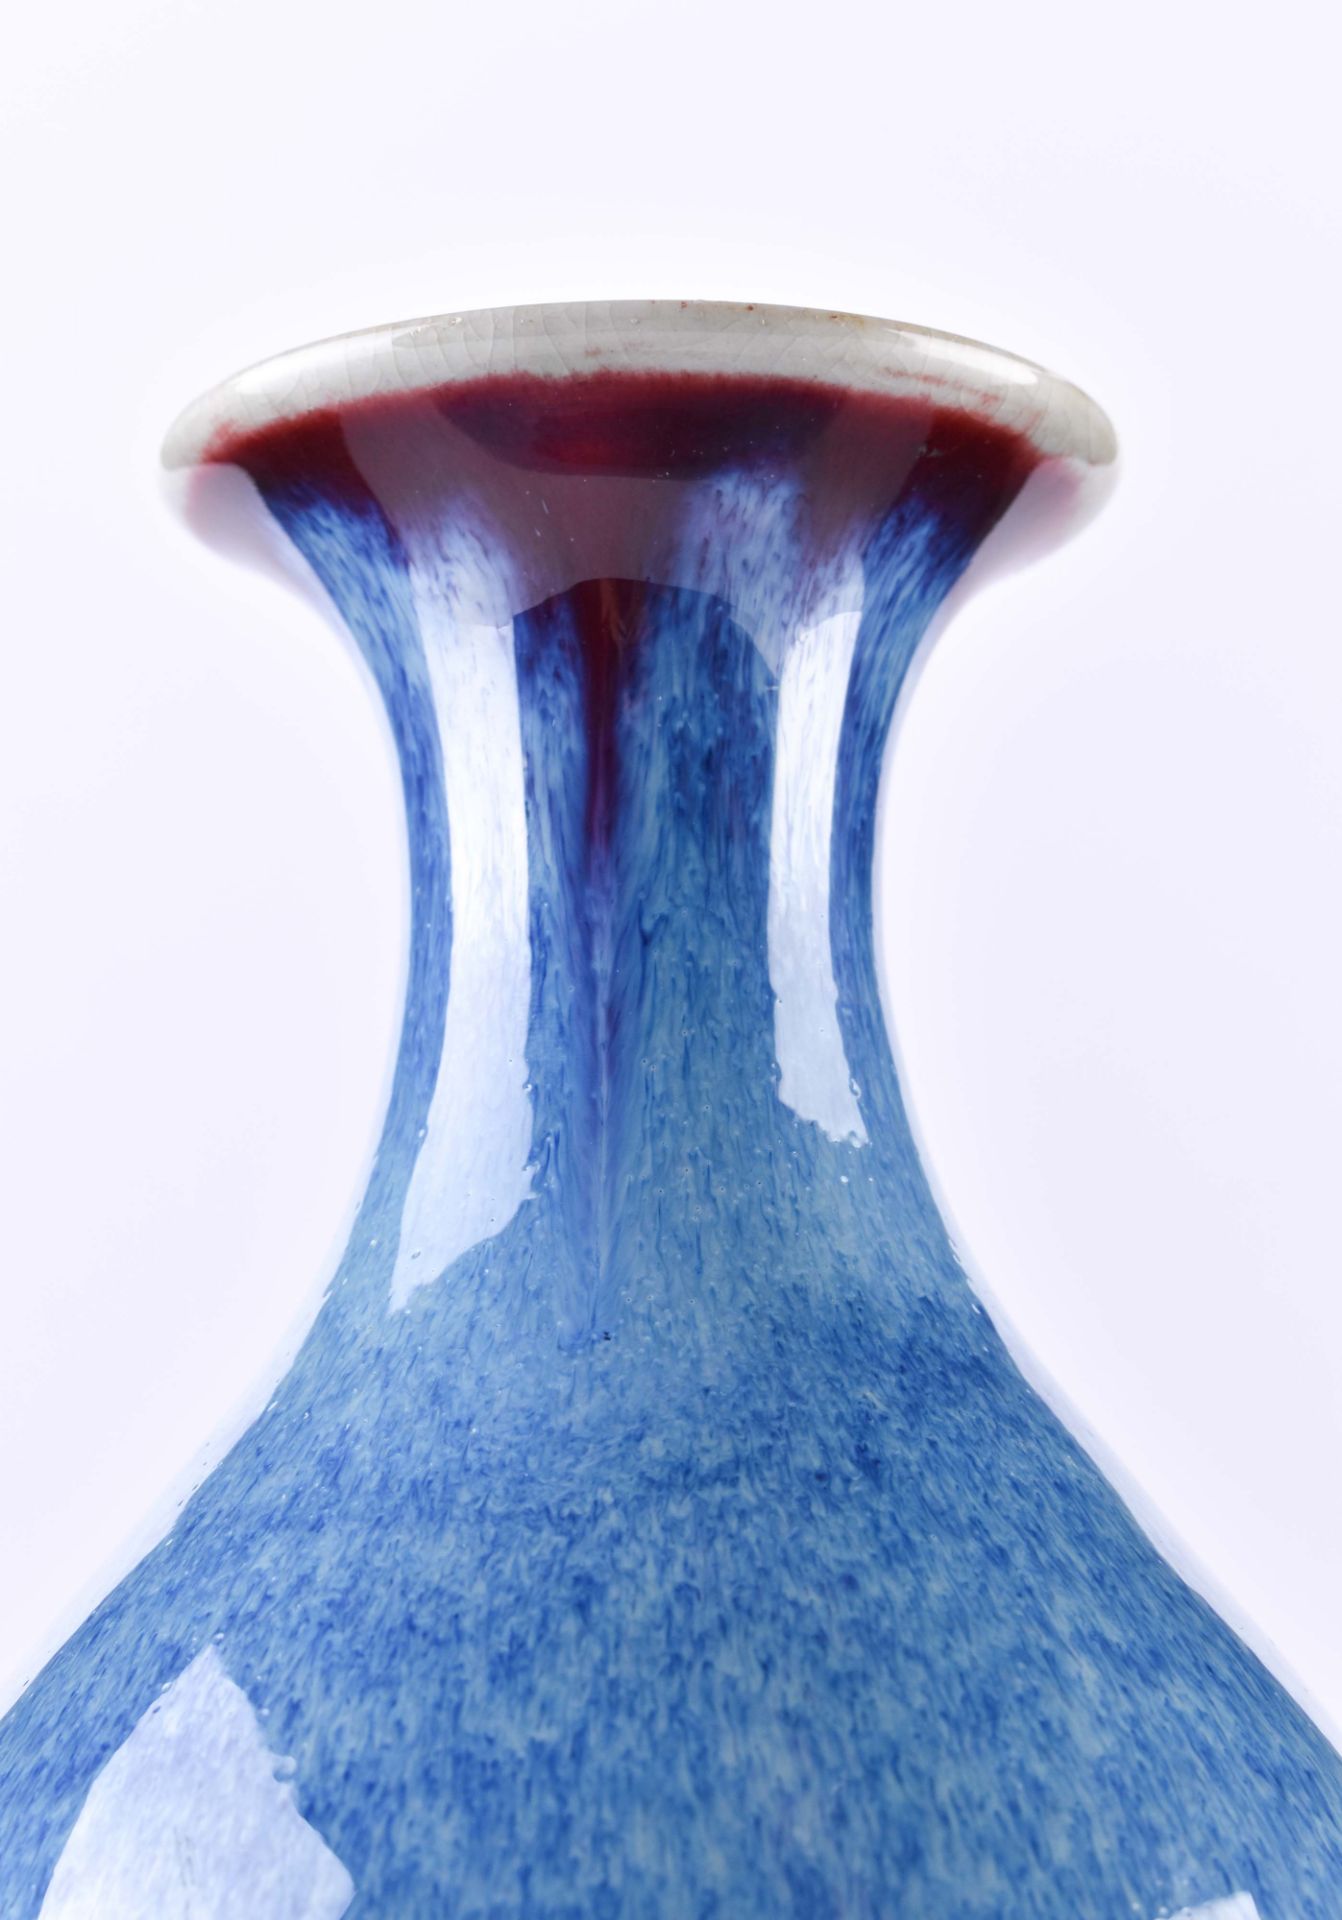 Vase China Qing dynasty - Image 5 of 6